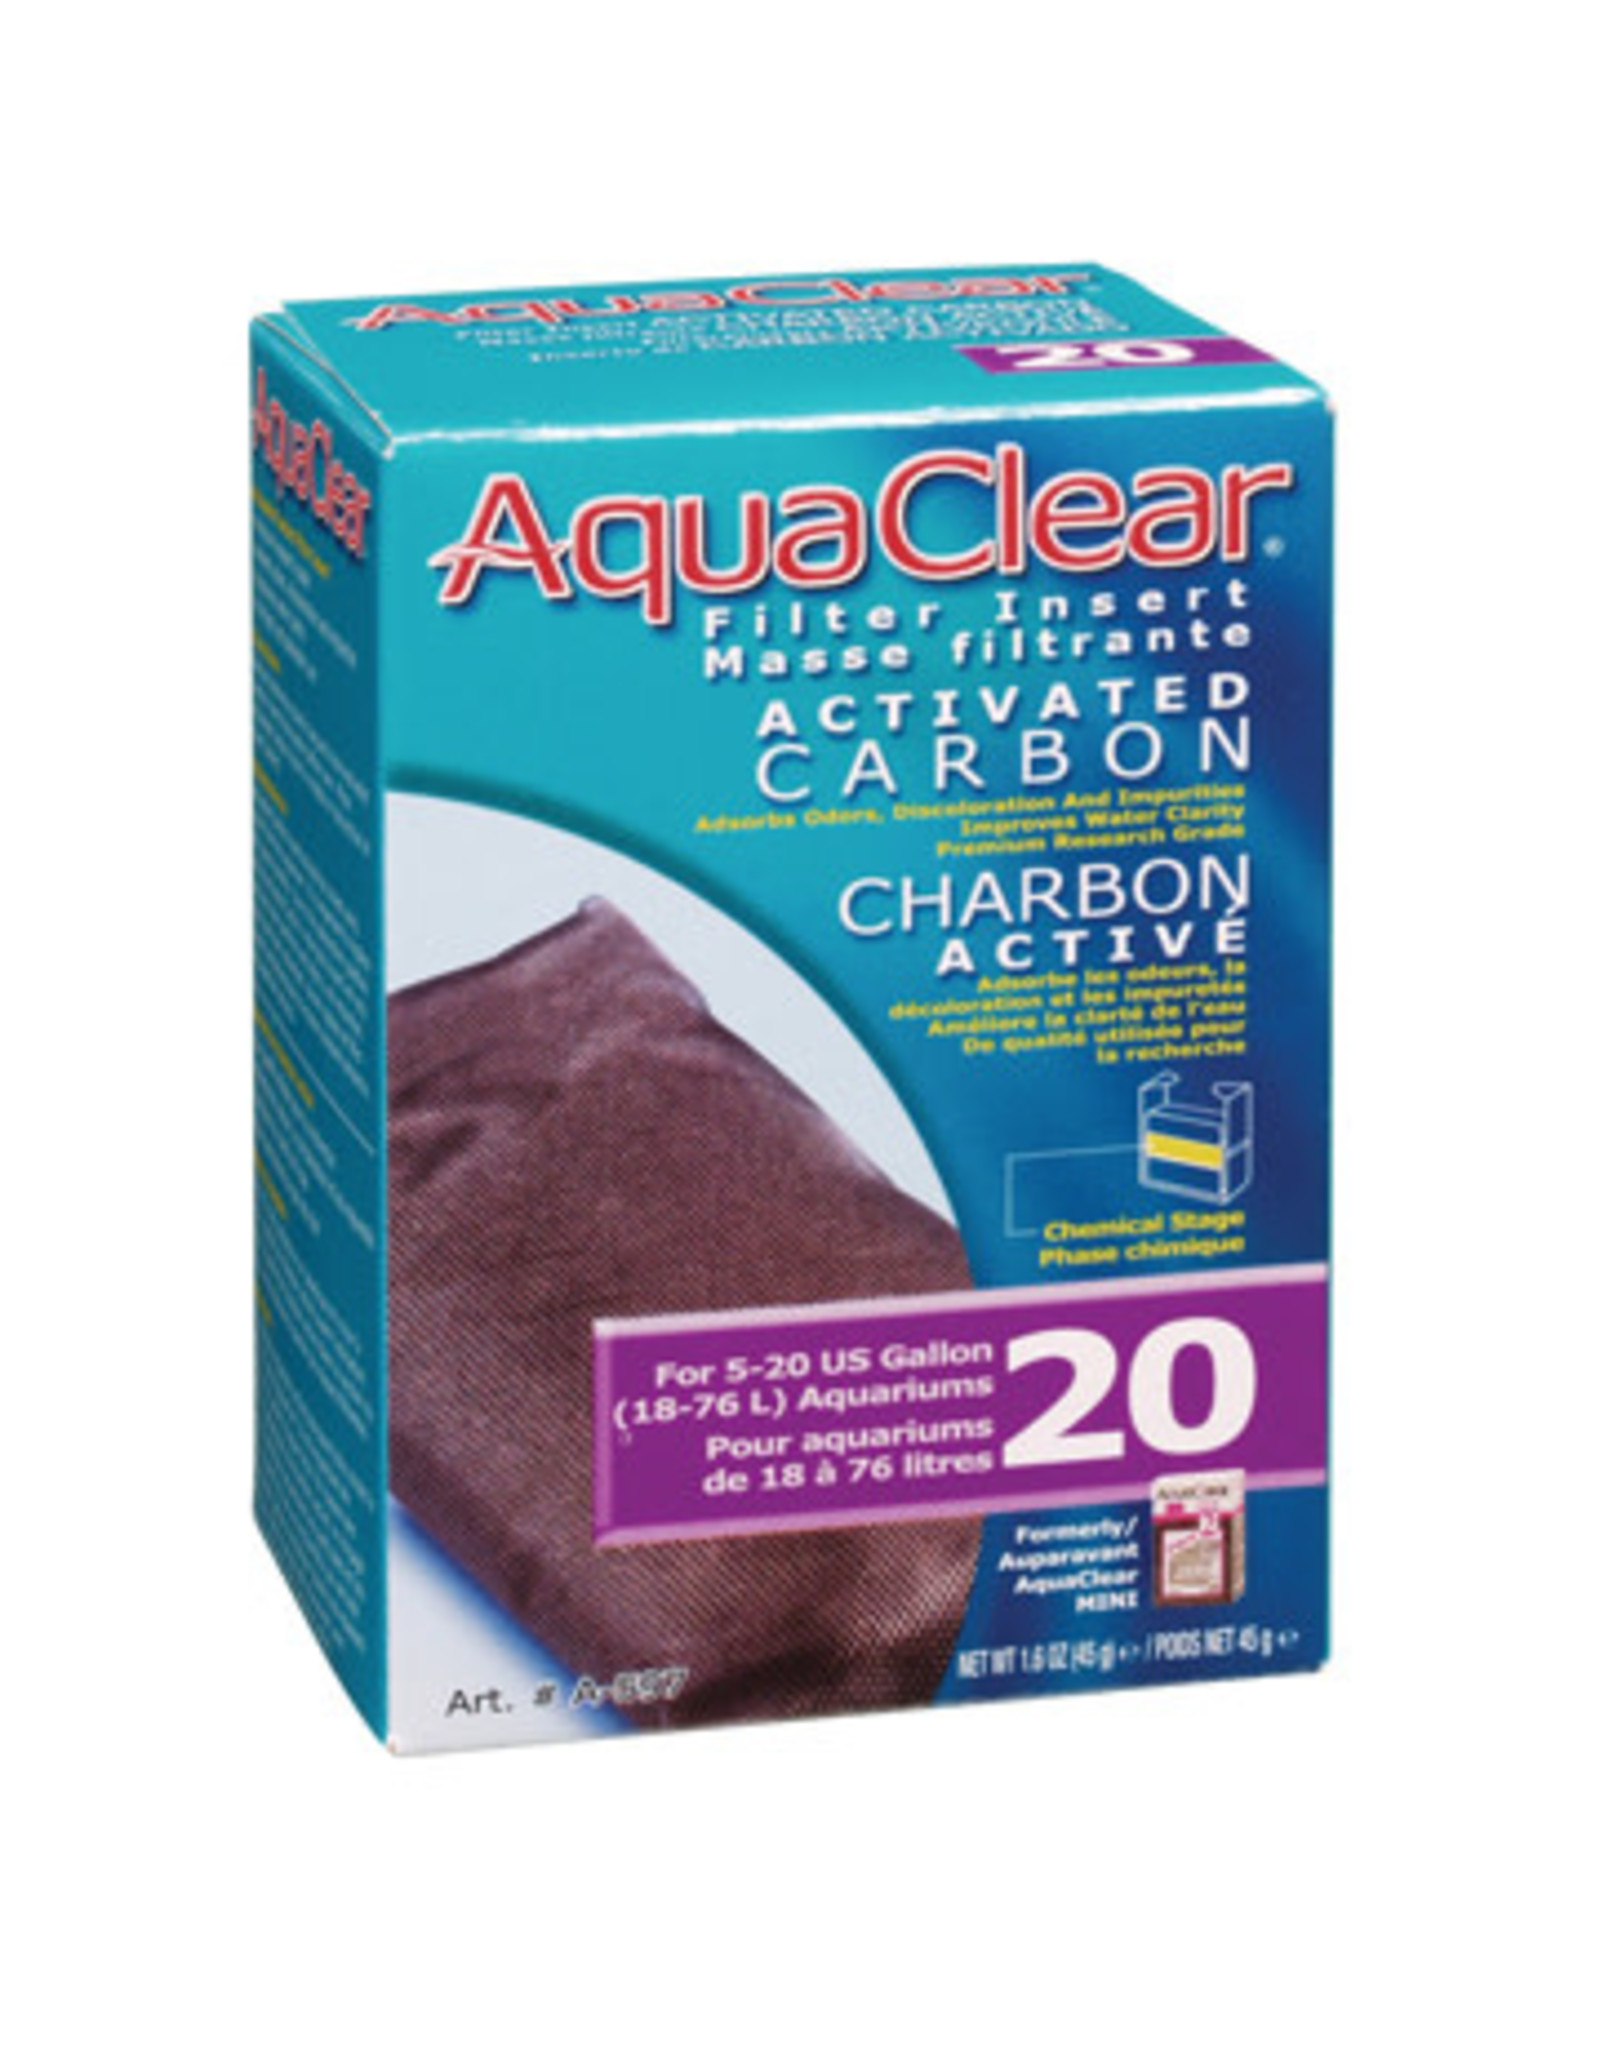 AquaClear AquaClear 20 Activated Carbon Filter Insert 45g